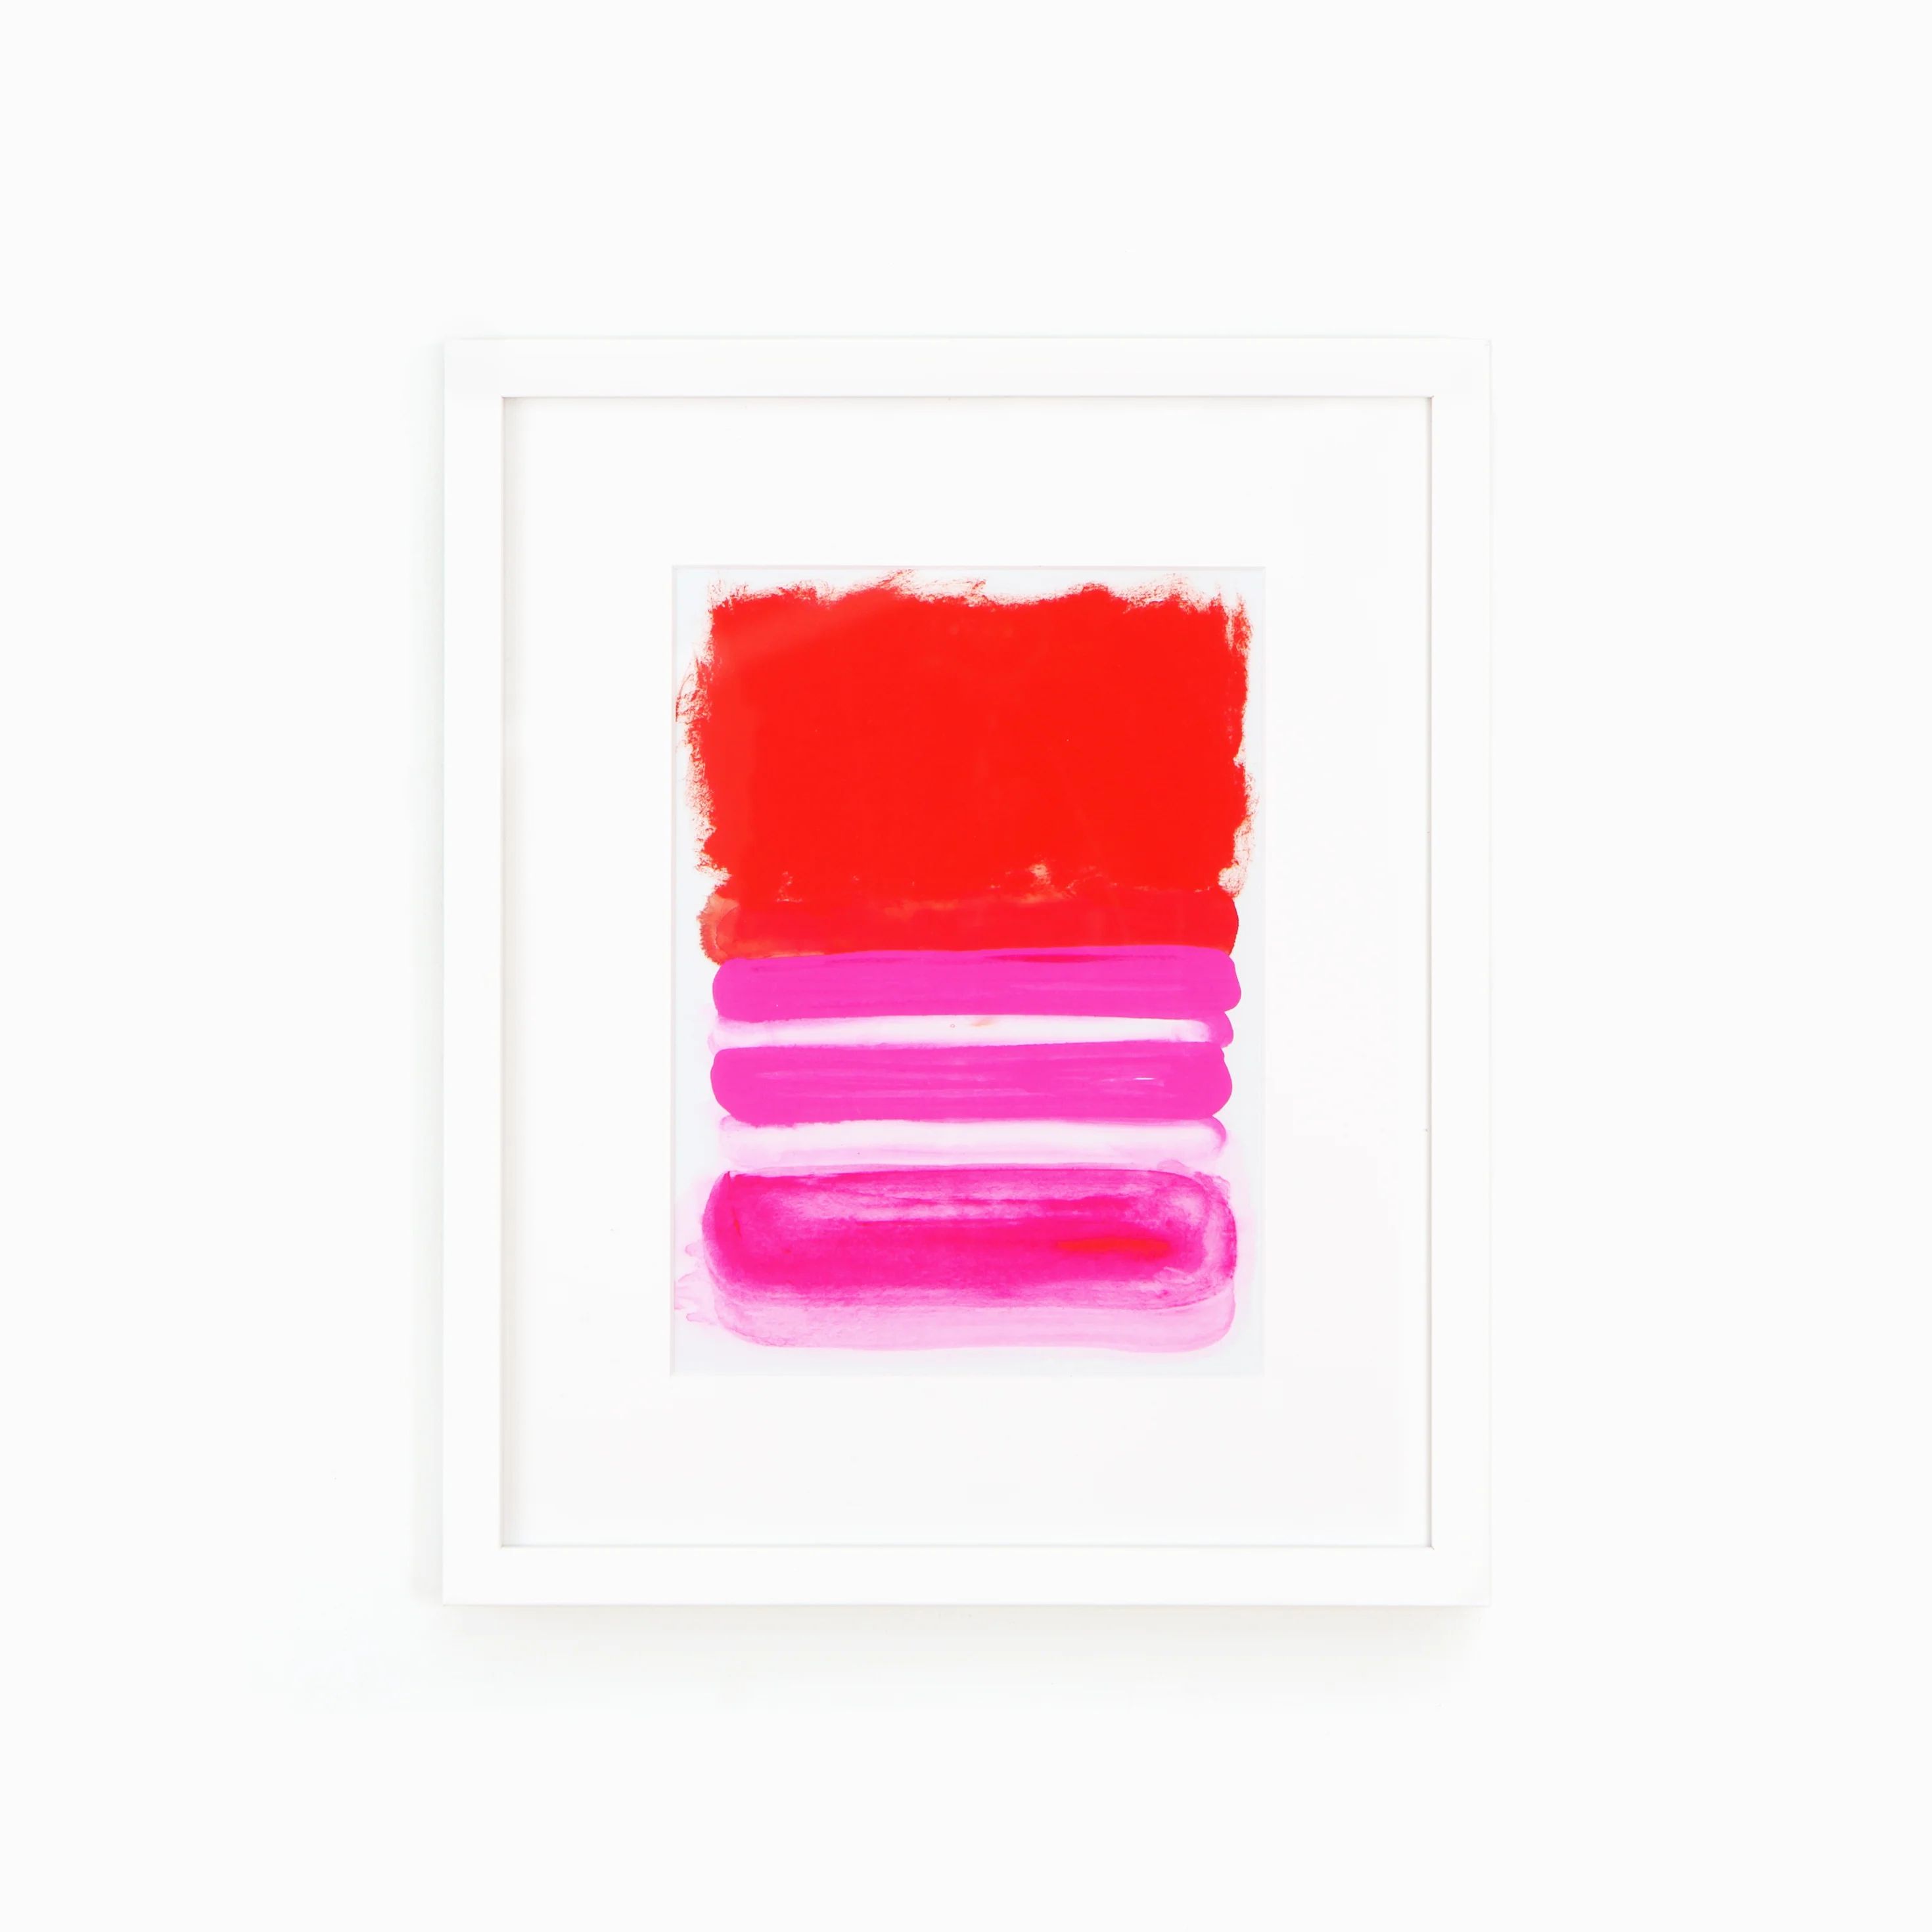 Clean white gallery frame | Framebridge